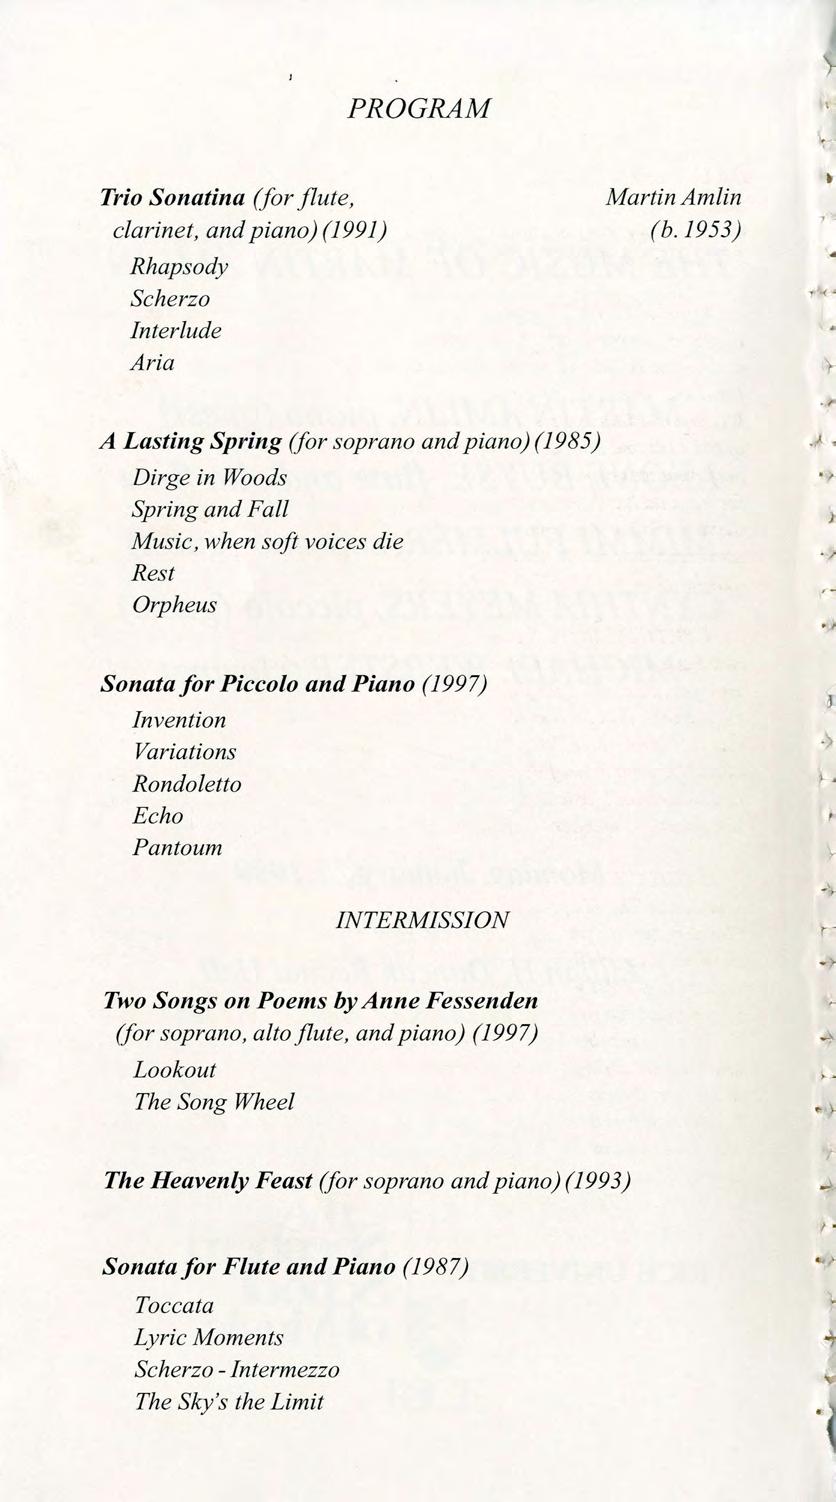 I PROGRAM Trio Sonatina (for flute clarinet and piano) (1991) Rhapsody Scherzo Interlude Aria Martin Amlin (b.